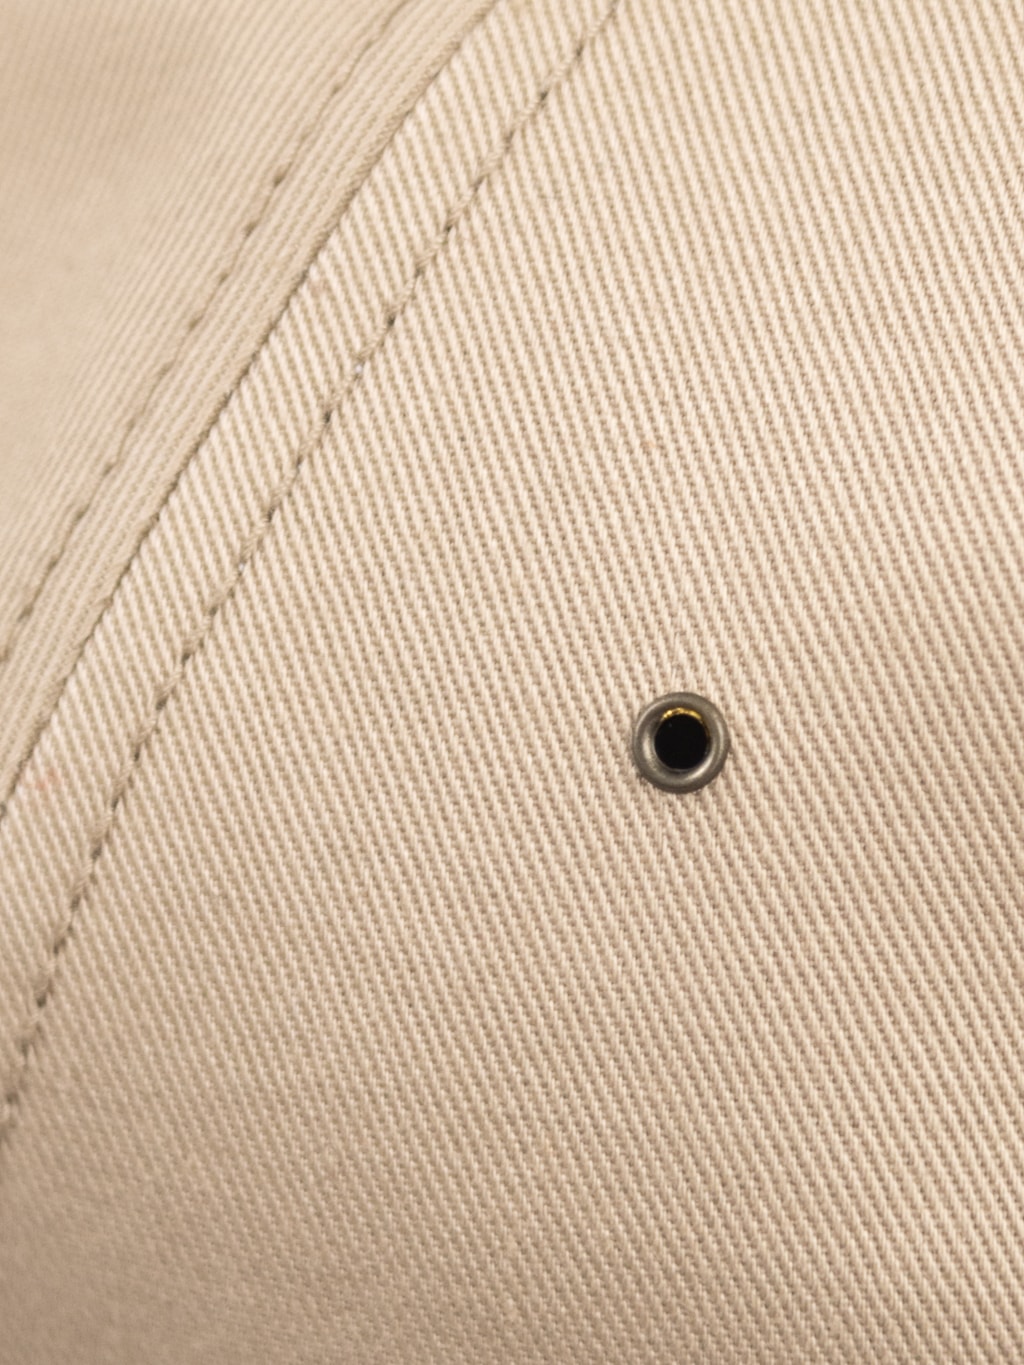 Mr Fatman Classic BB Cap Beige ventilation holes closeup